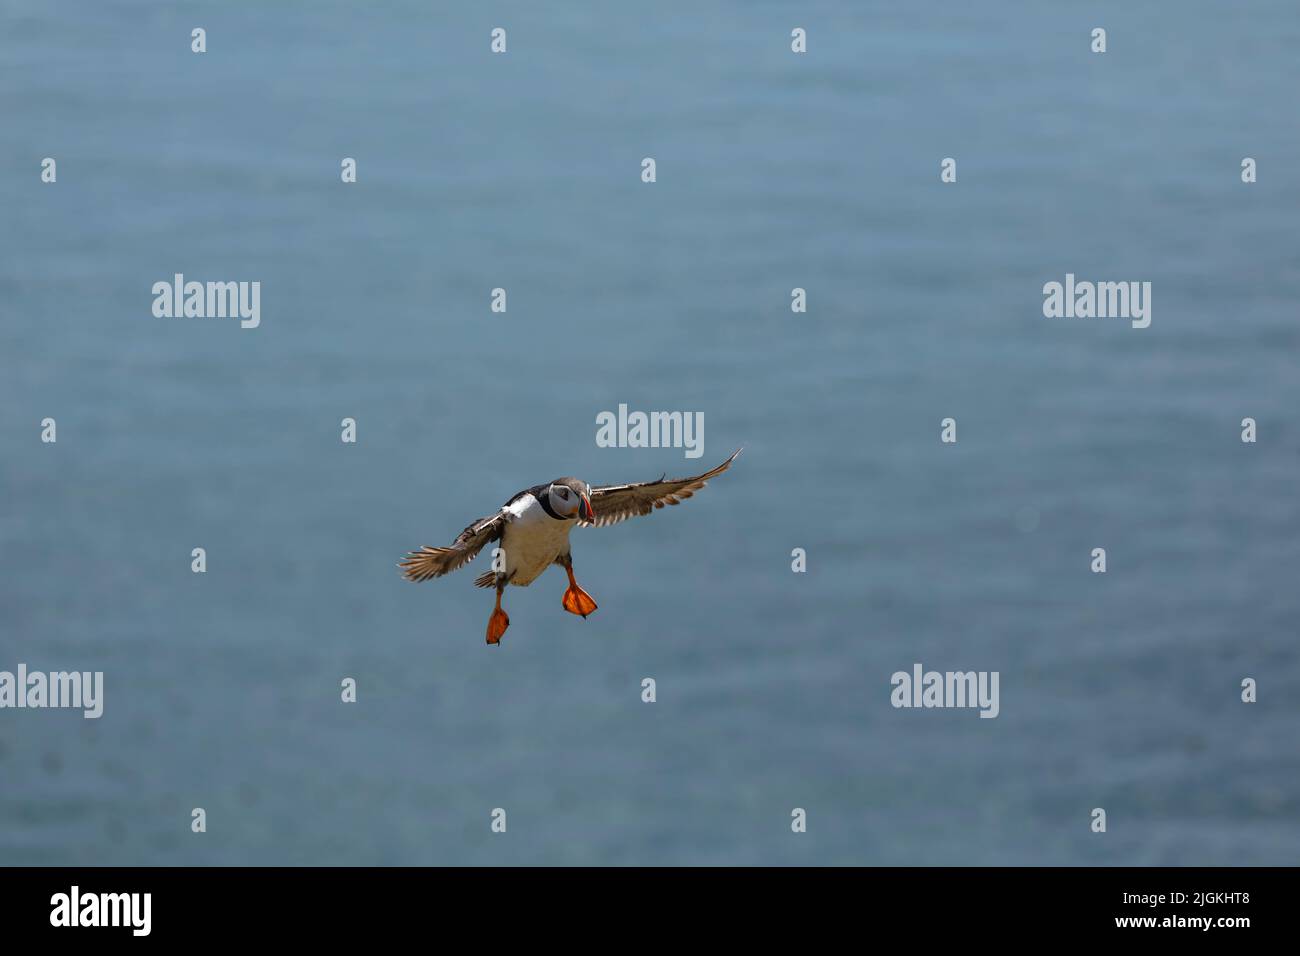 Papageitaucher im Flug mit Meereshintergrund Stockfoto